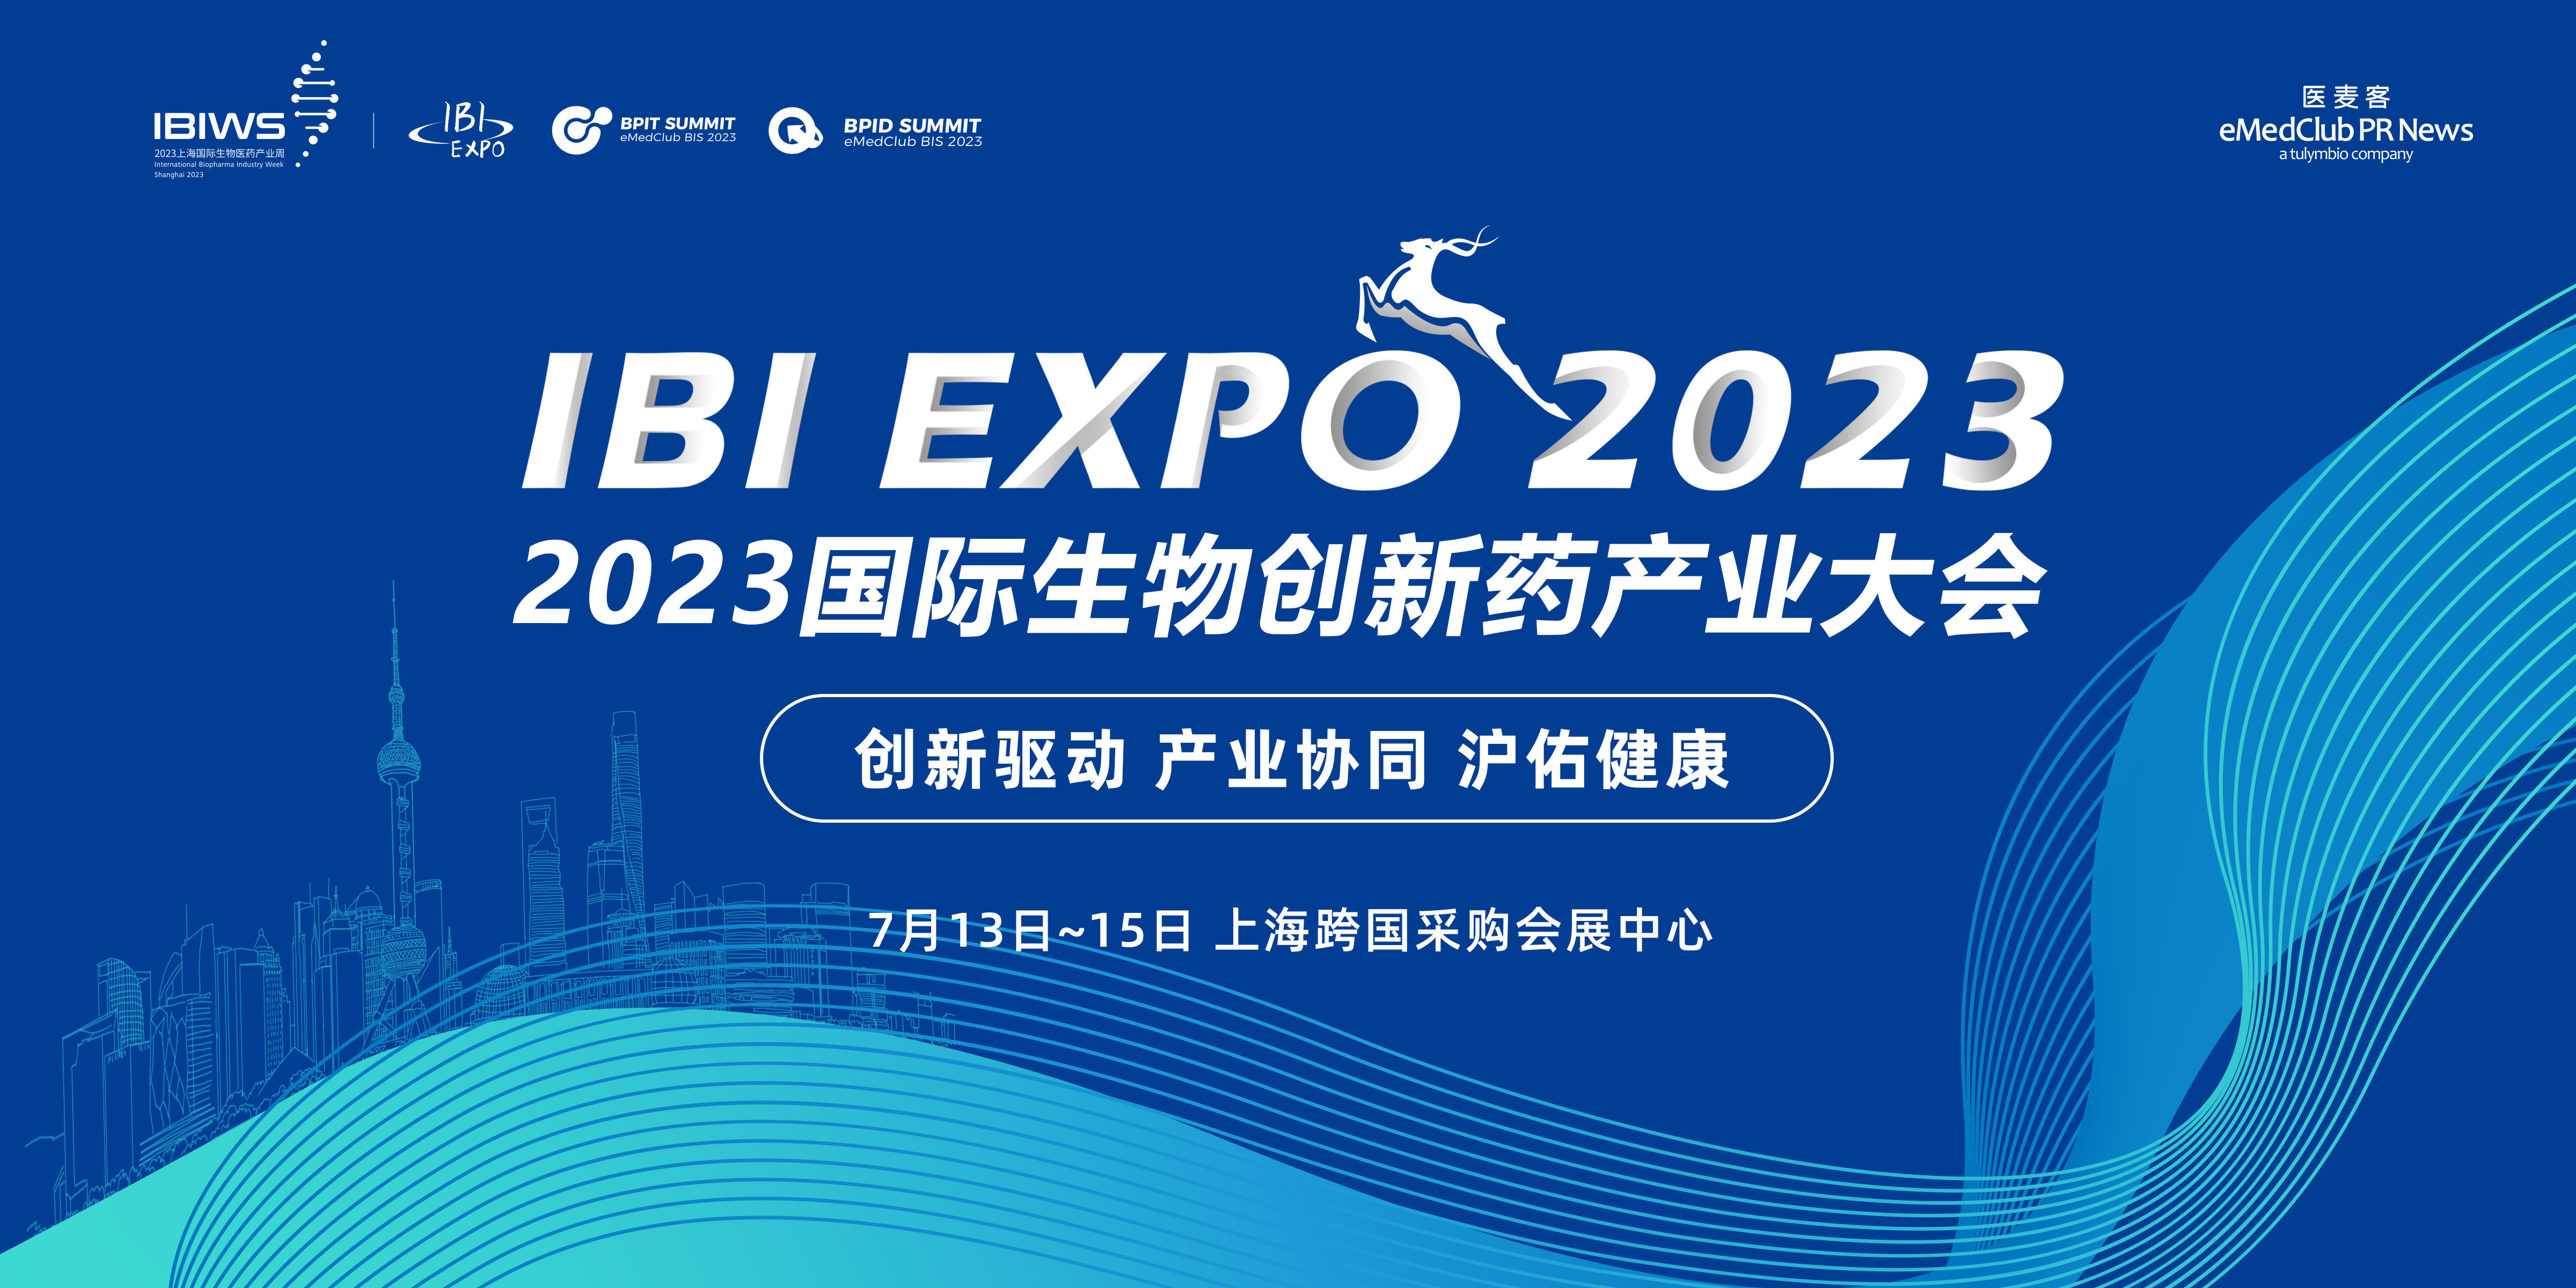 上海55004100百老汇app邀您相约IBI EXPO 2023国际生物创新药产业大会